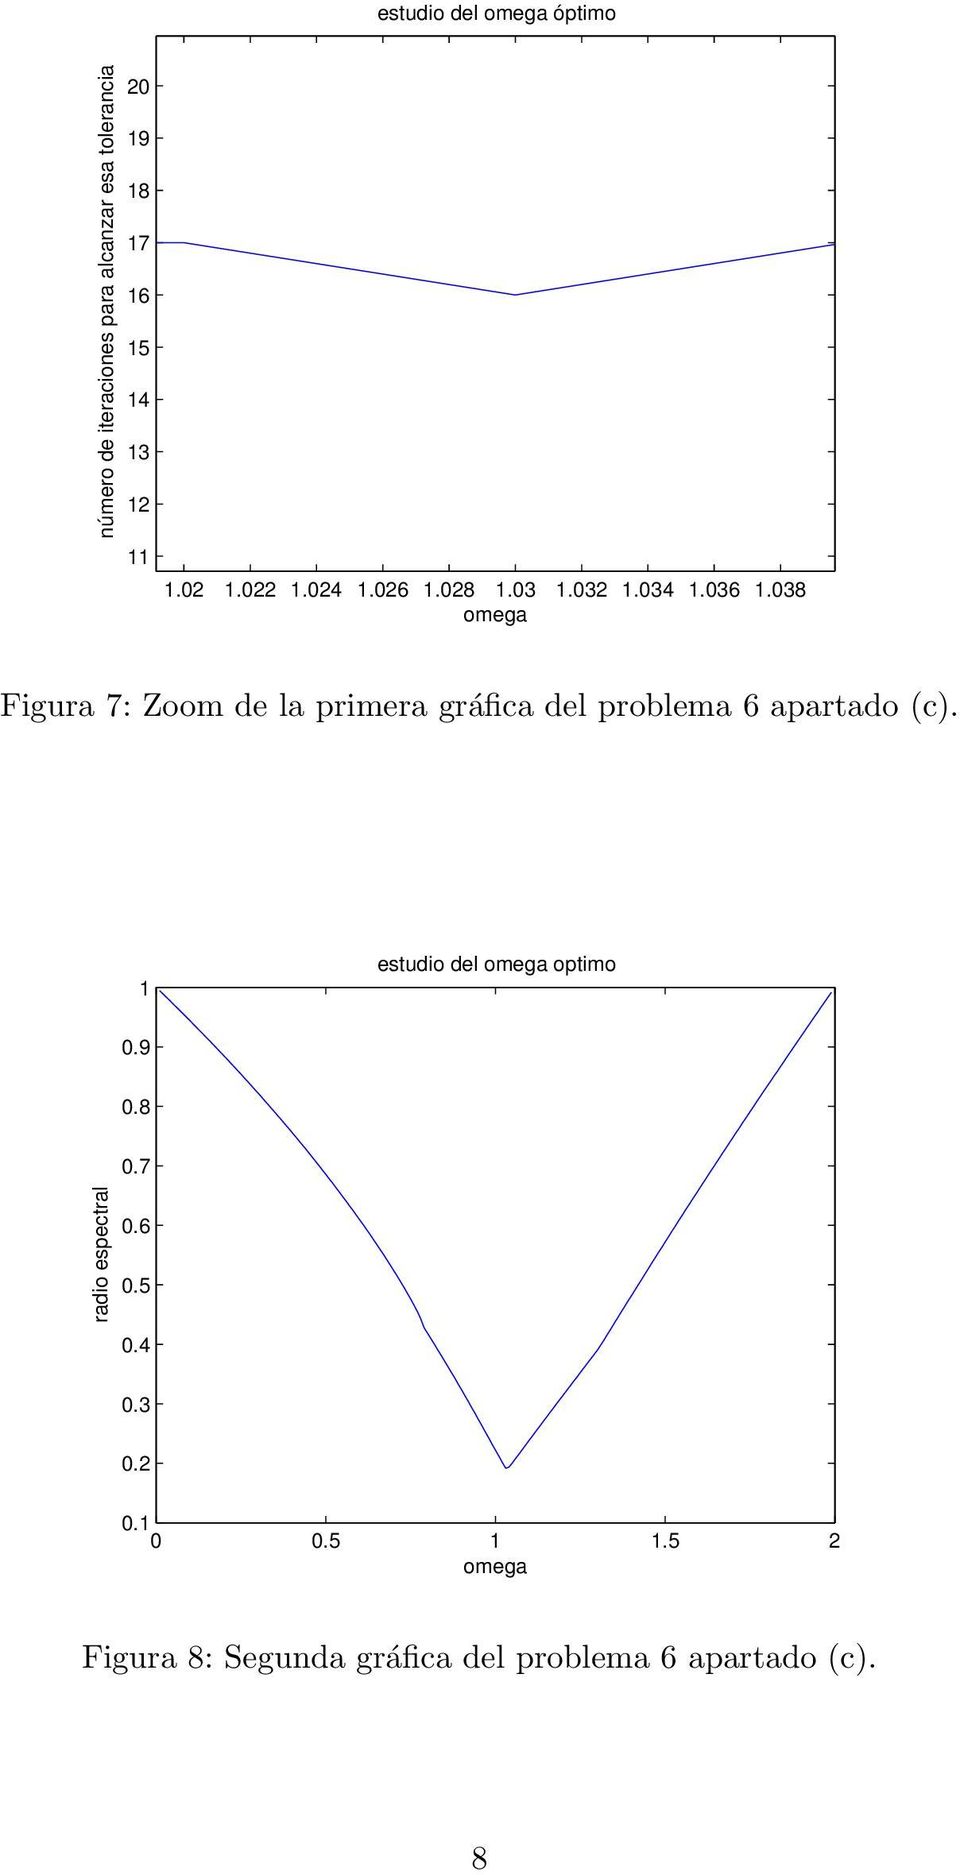 primera gráfica del problema 6 apartado c 1 estudio del omega optimo 09 08 07 radio